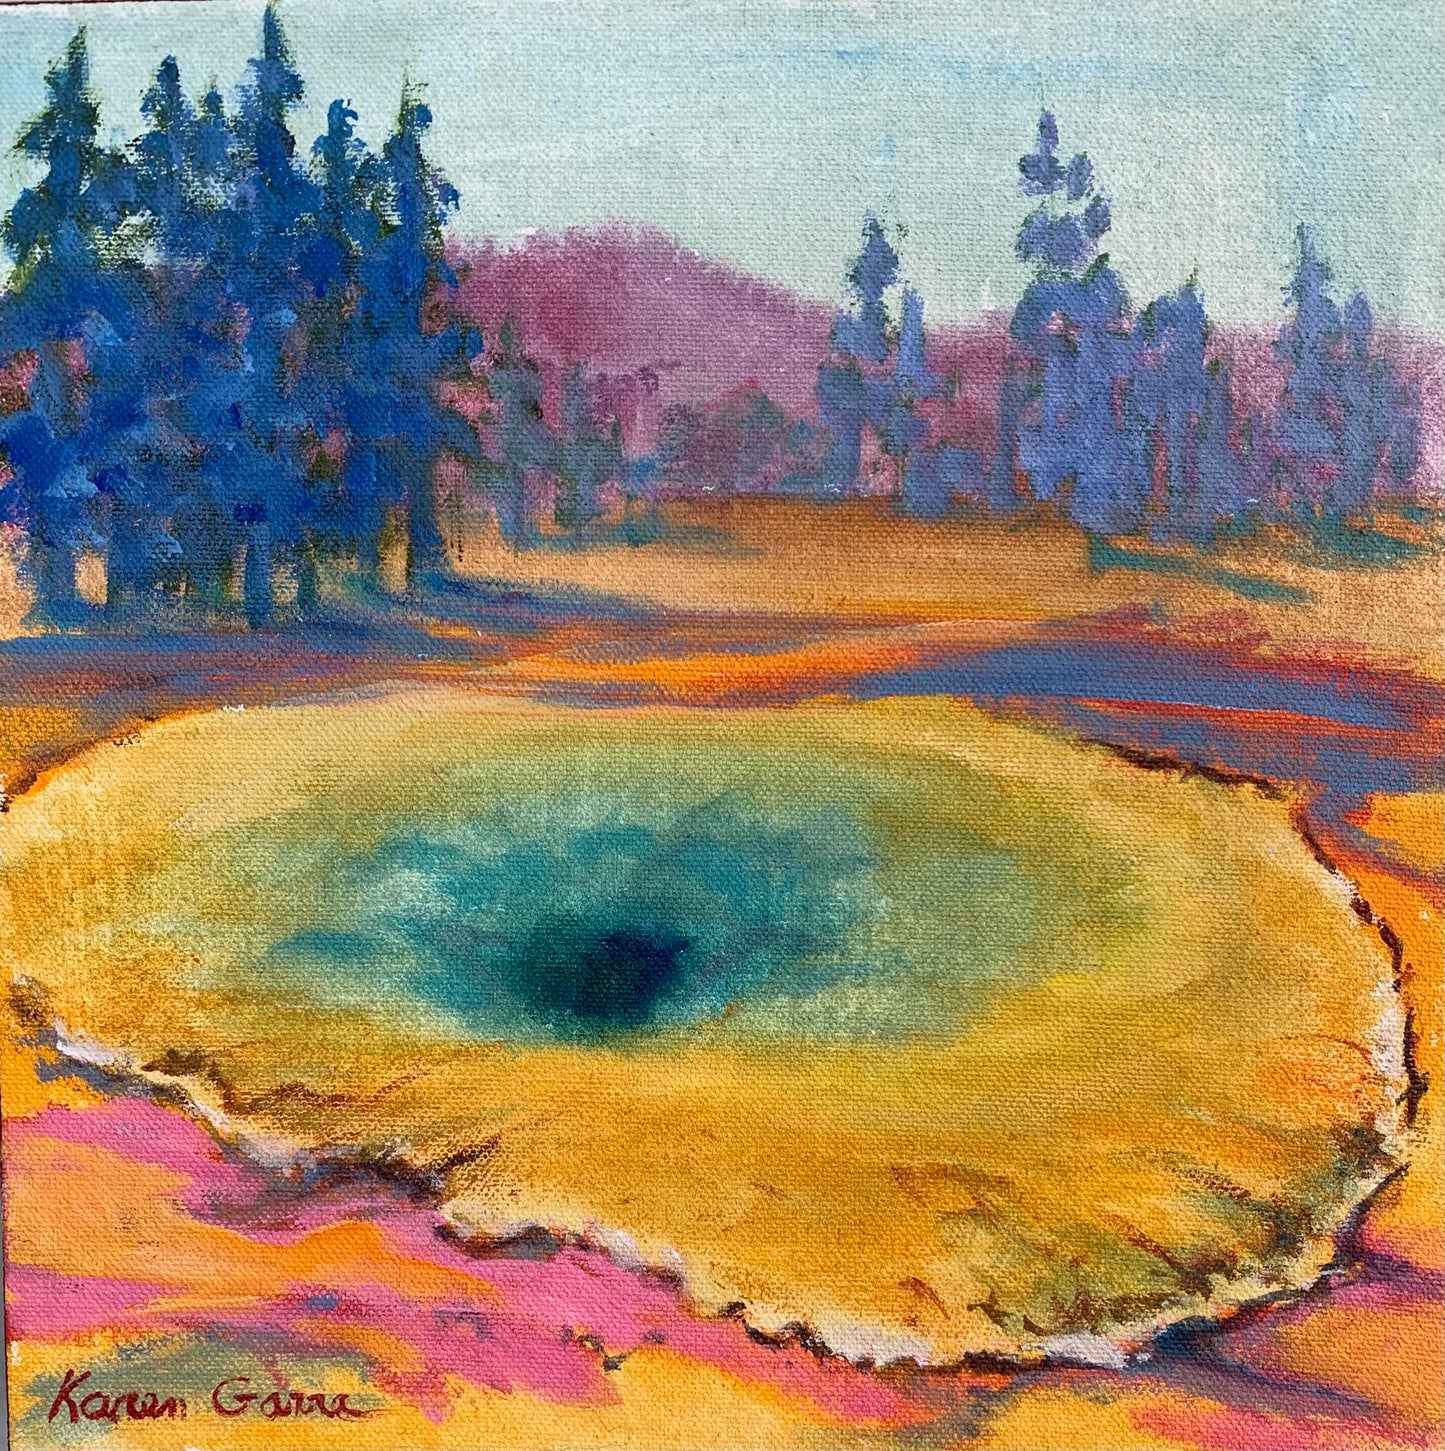 KarenG- Painting- "Morning Glory Pool" 10x10